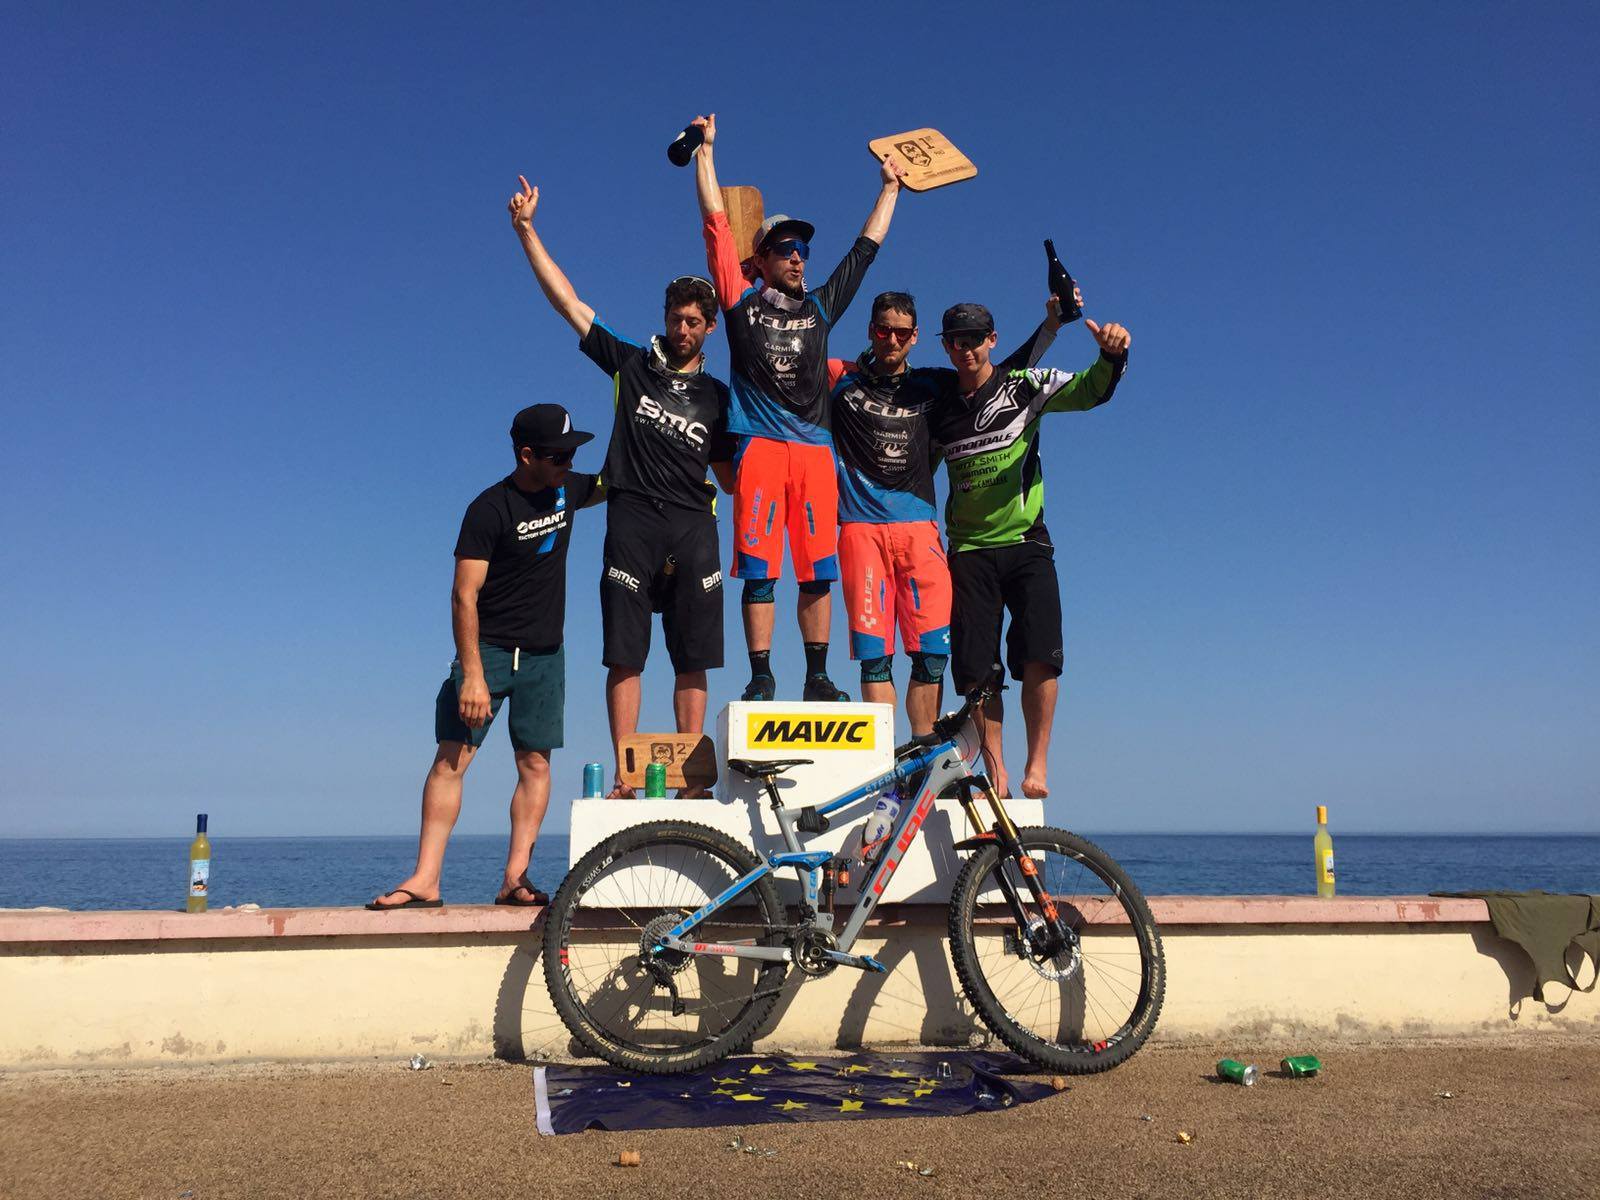 Nicolas Lau et Gusti Wildhaber ont cubé le podium de cette édition 2016 de la Mavic Trans-Provence. Félicitations !